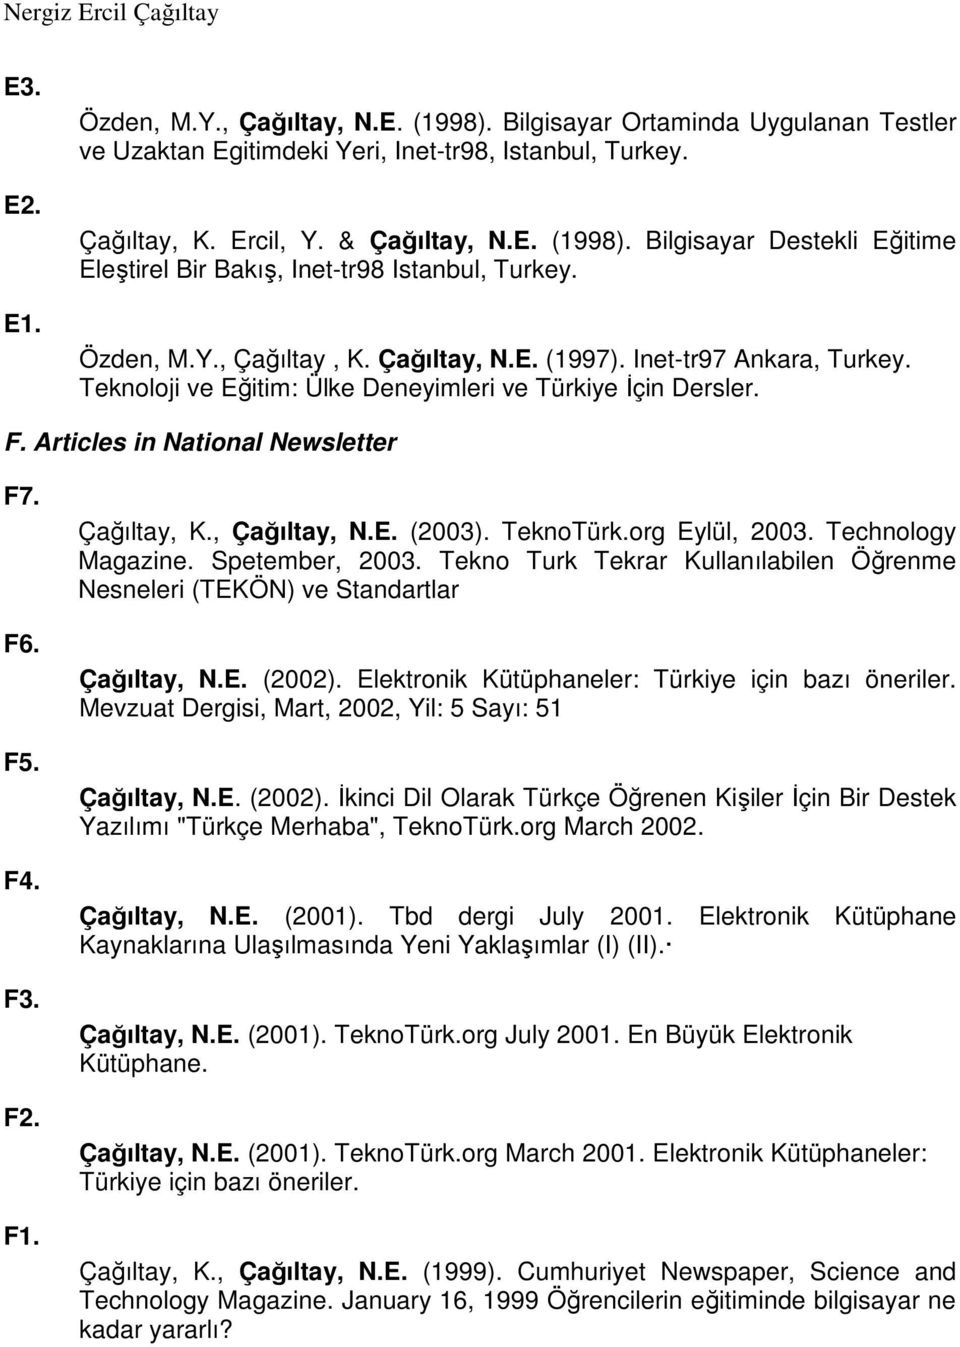 Çağıltay, K., Çağıltay, N.E. (2003). TeknoTürk.org Eylül, 2003. Technology Magazine. Spetember, 2003. Tekno Turk Tekrar Kullanılabilen Öğrenme Nesneleri (TEKÖN) ve Standartlar Çağıltay, N.E. (2002).